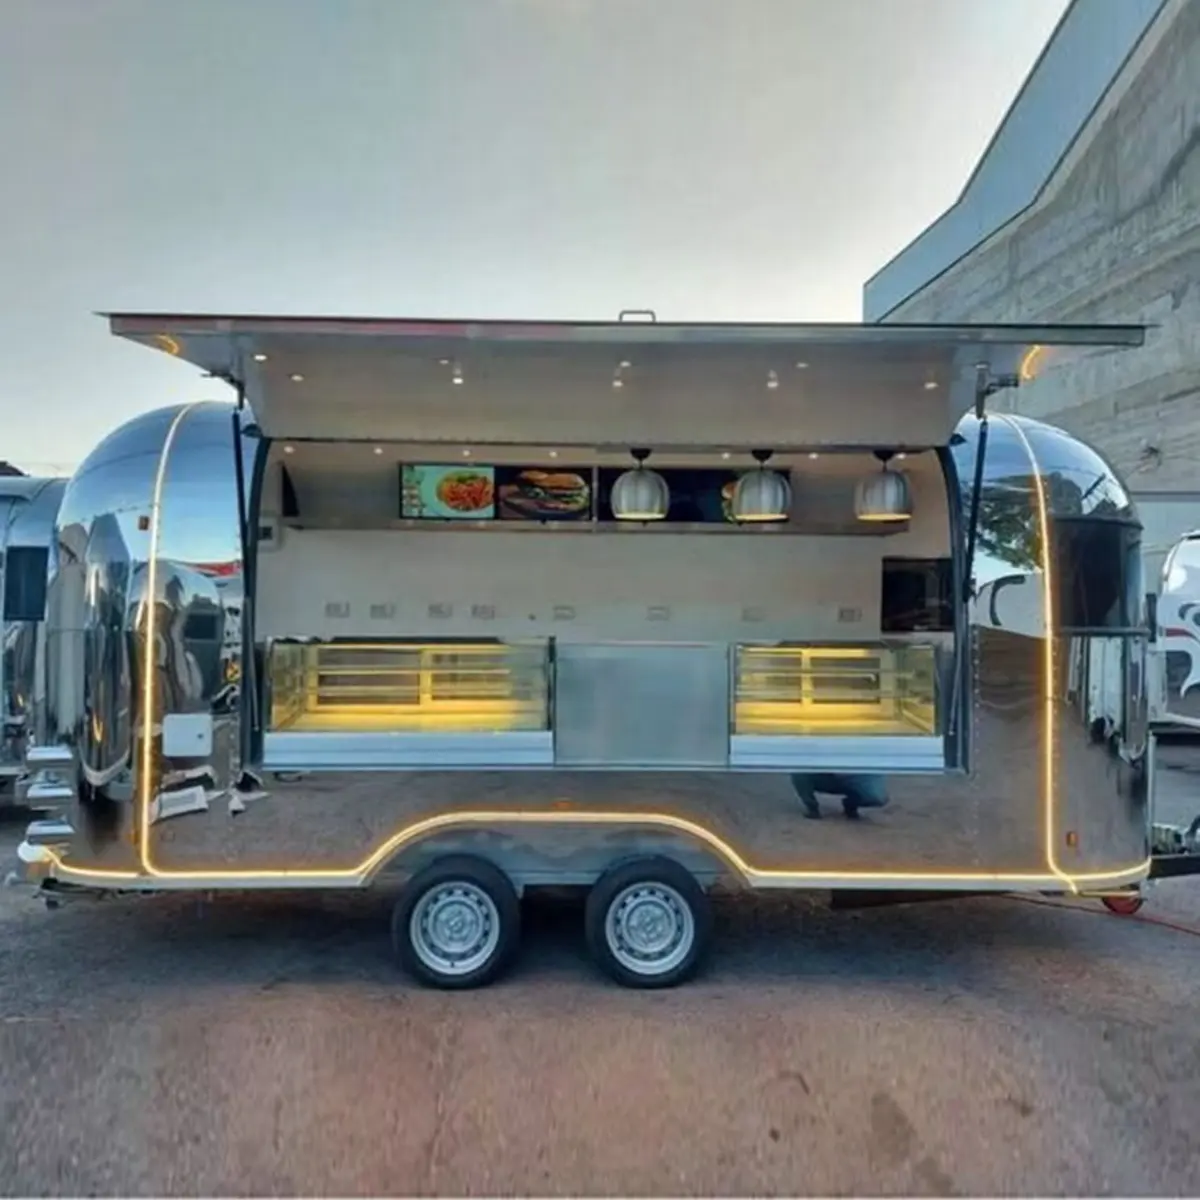 Vintage Airstream  forma di furgone Mobile elettrico Street Food Truck Trailer per pollo fritto bevanda gelato dolci panetteria